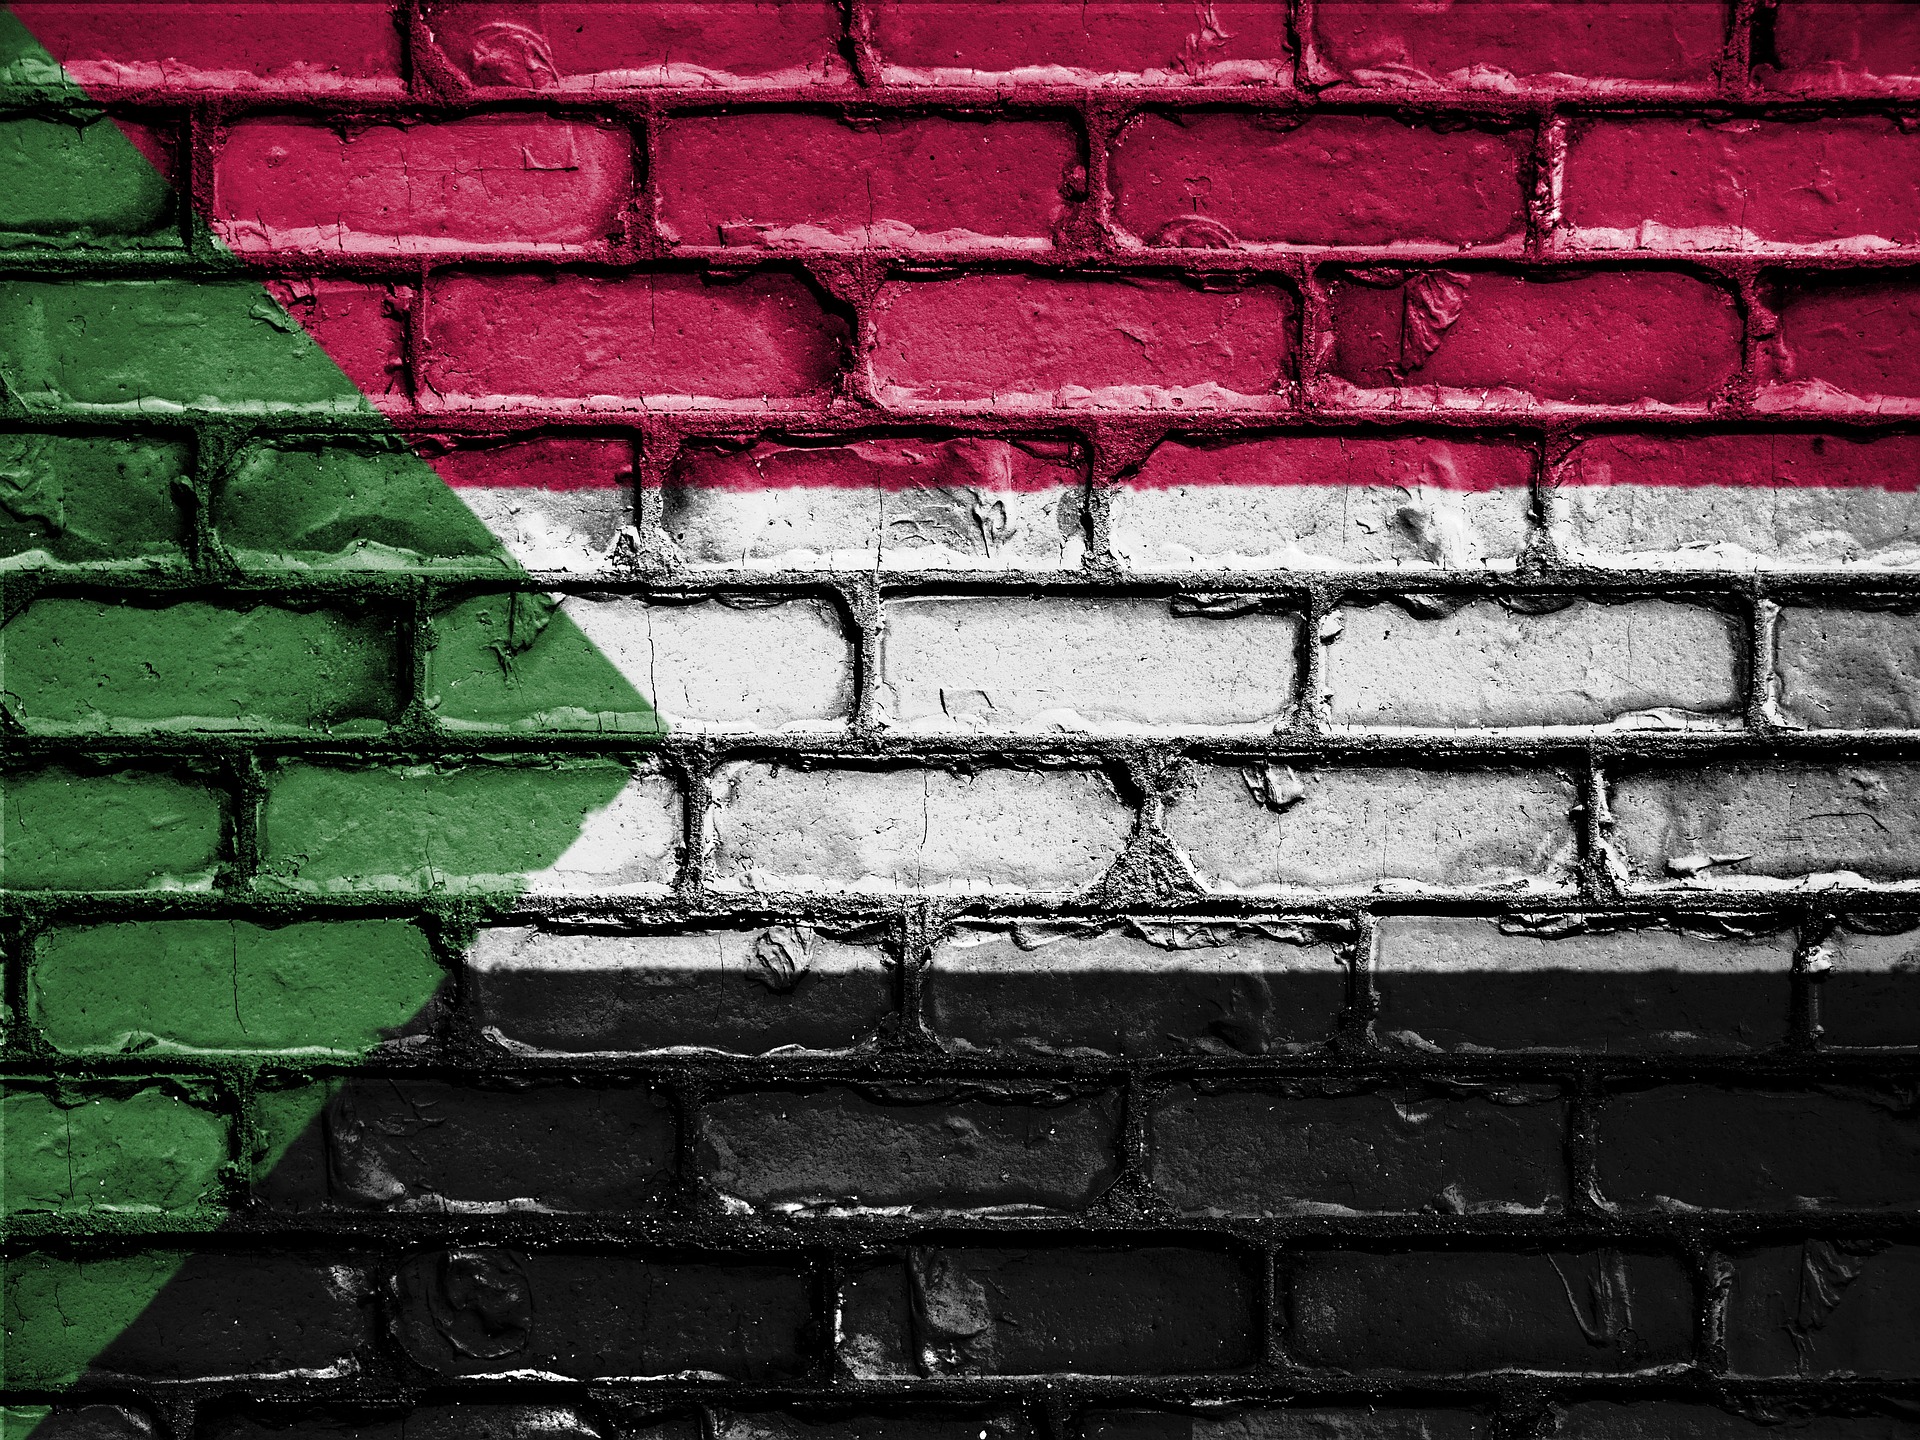 Sudan: Broken ceasefire agreement, healthcare facilities closing